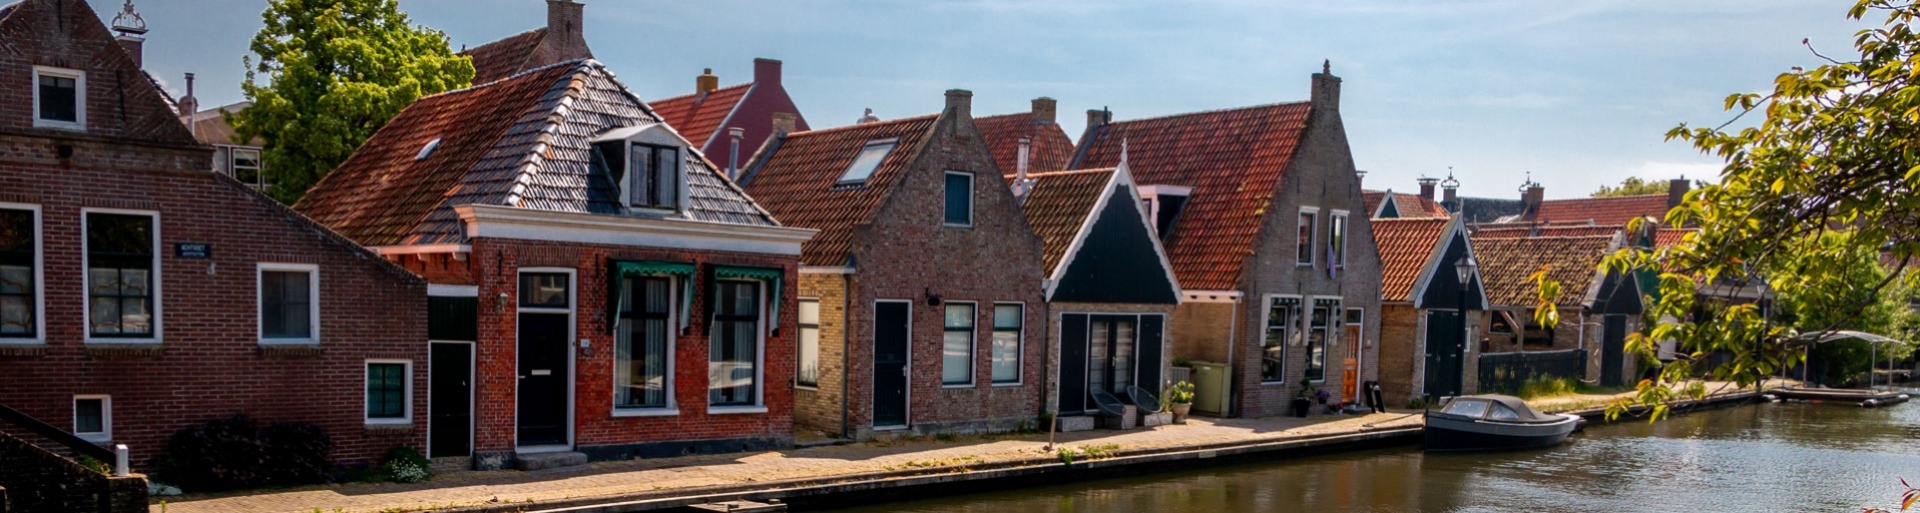 huisjes in een mooi dorp in Nederland